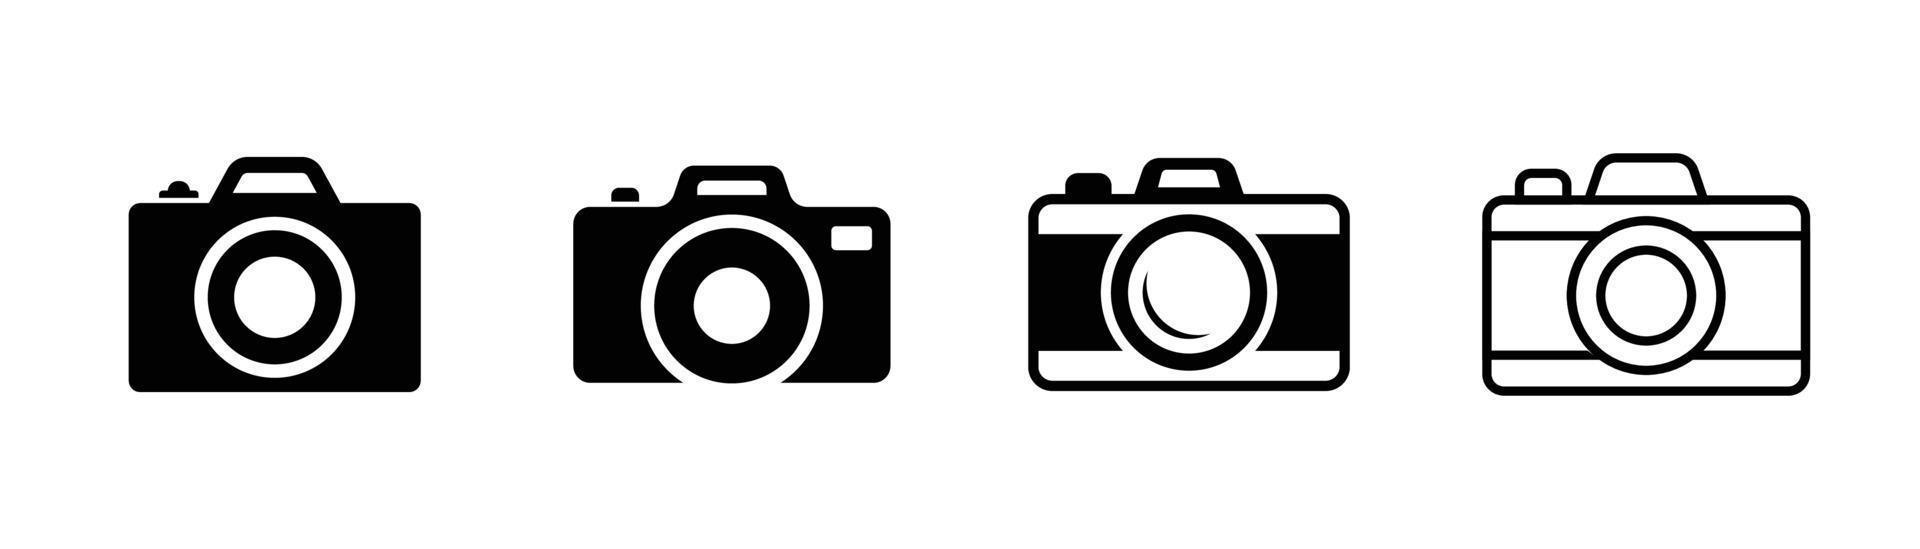 Designelement für Kamerasymbole, geeignet für Website, Printdesign oder App vektor